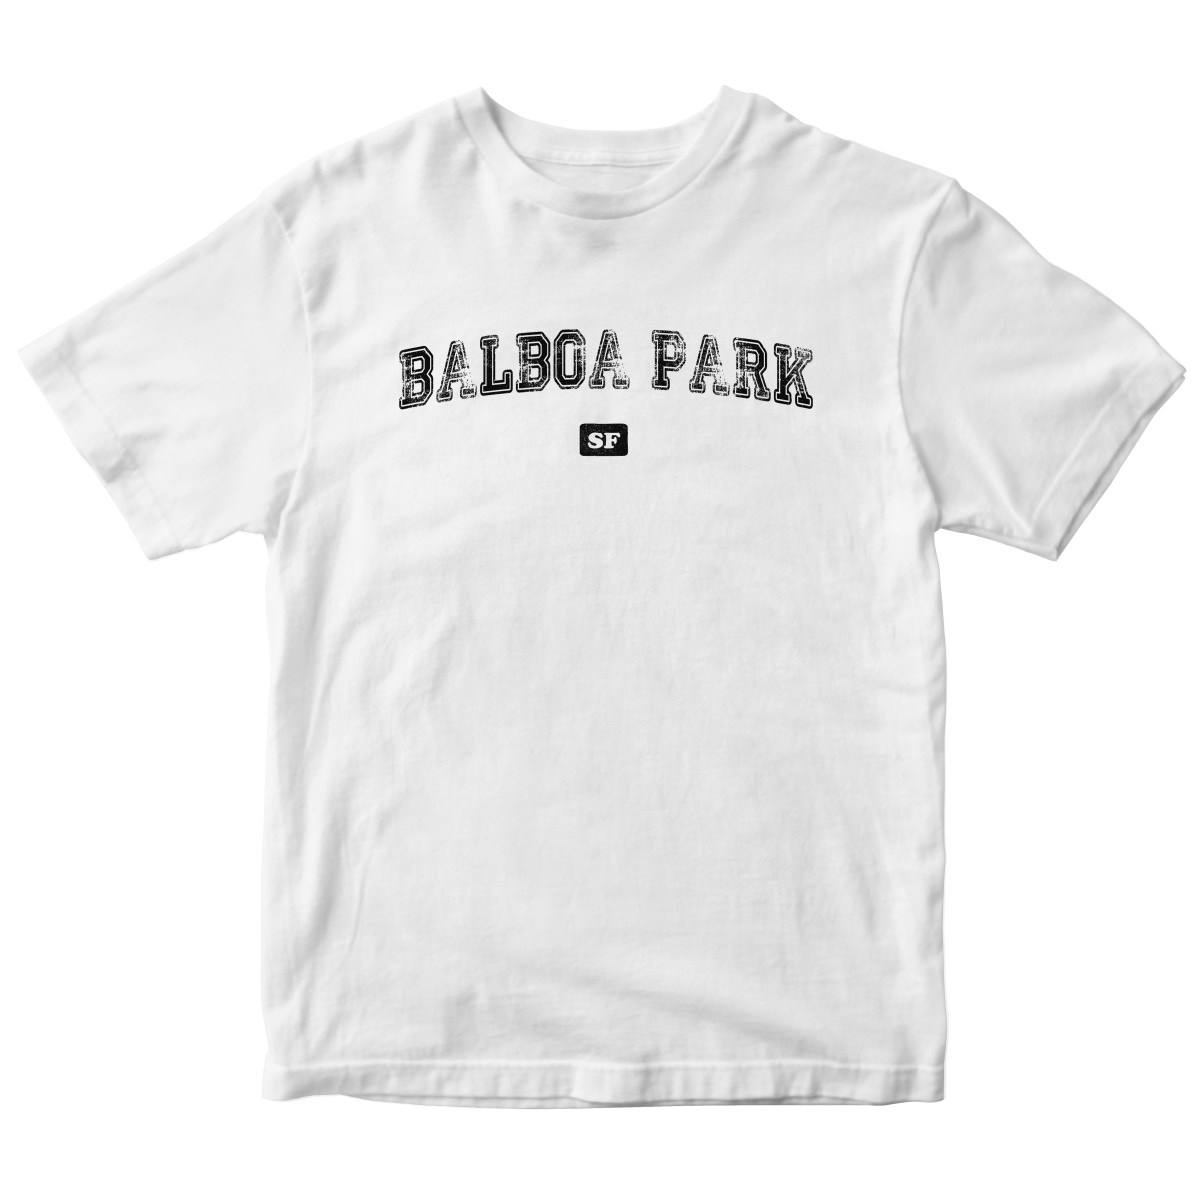 Balboa Park Sf Represent Toddler T-shirt | White